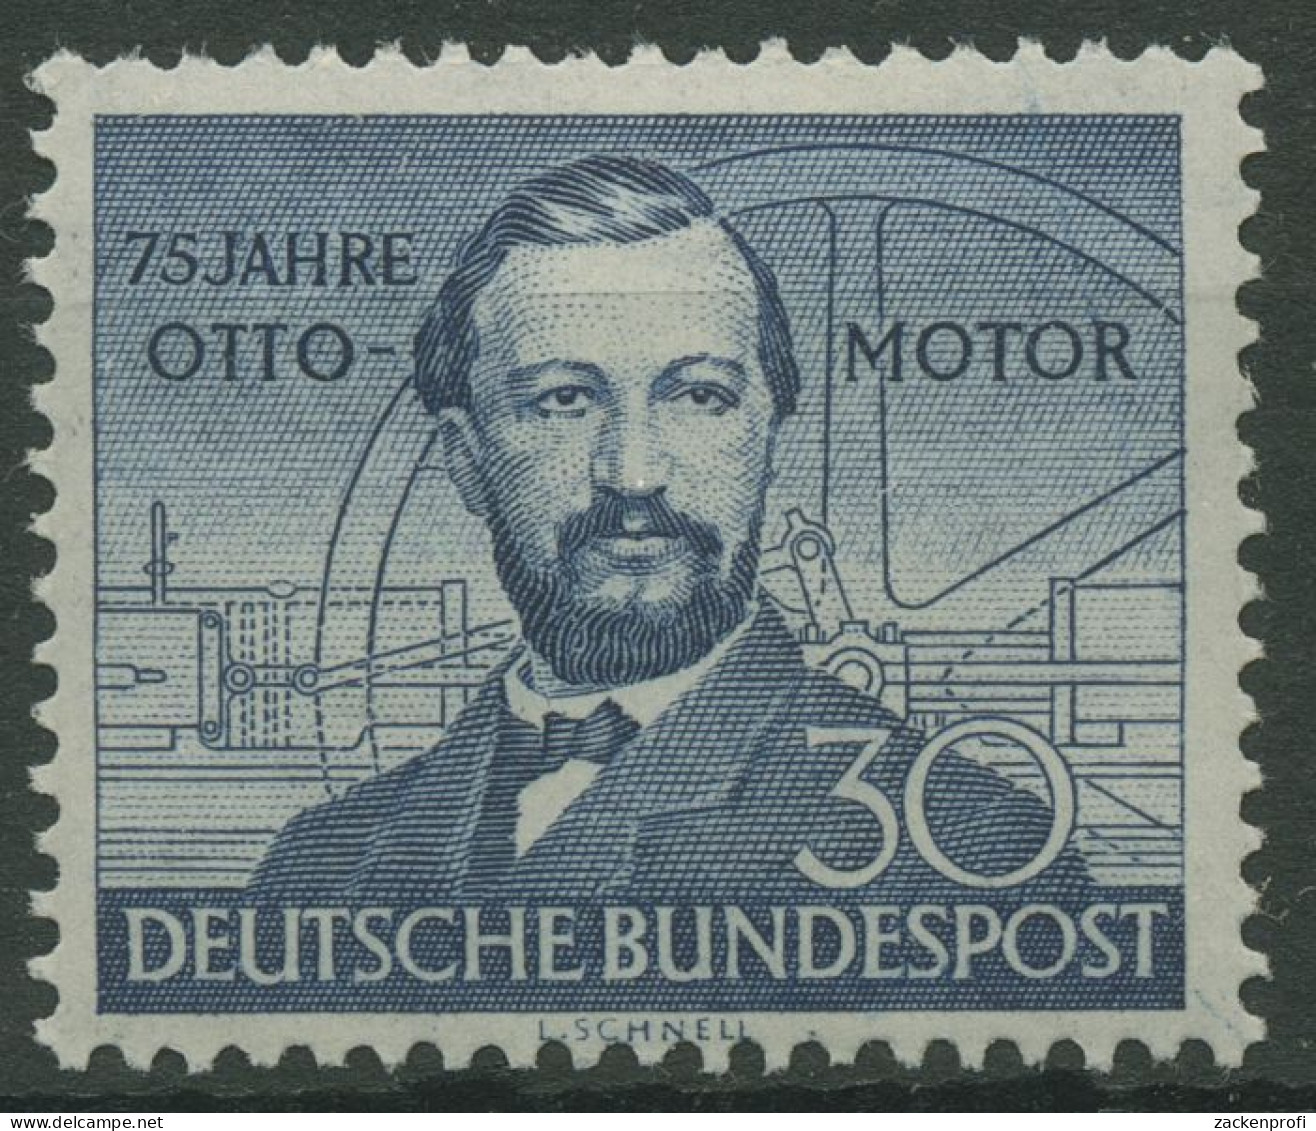 Bund 1952 Nikolaus Otto, Ottomotor 150 Postfrisch, Zahnfehler (R19459) - Unused Stamps